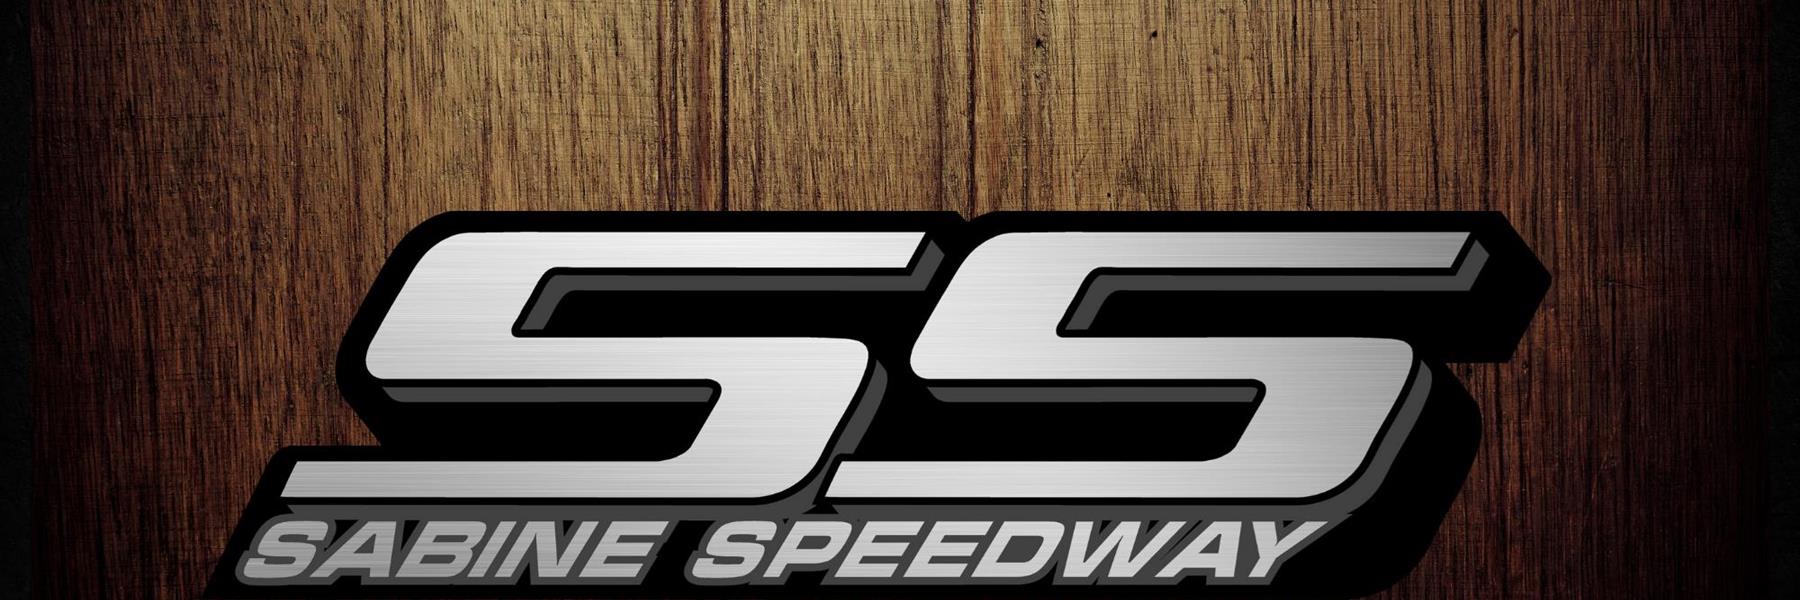 9/16/2022 - Sabine Speedway